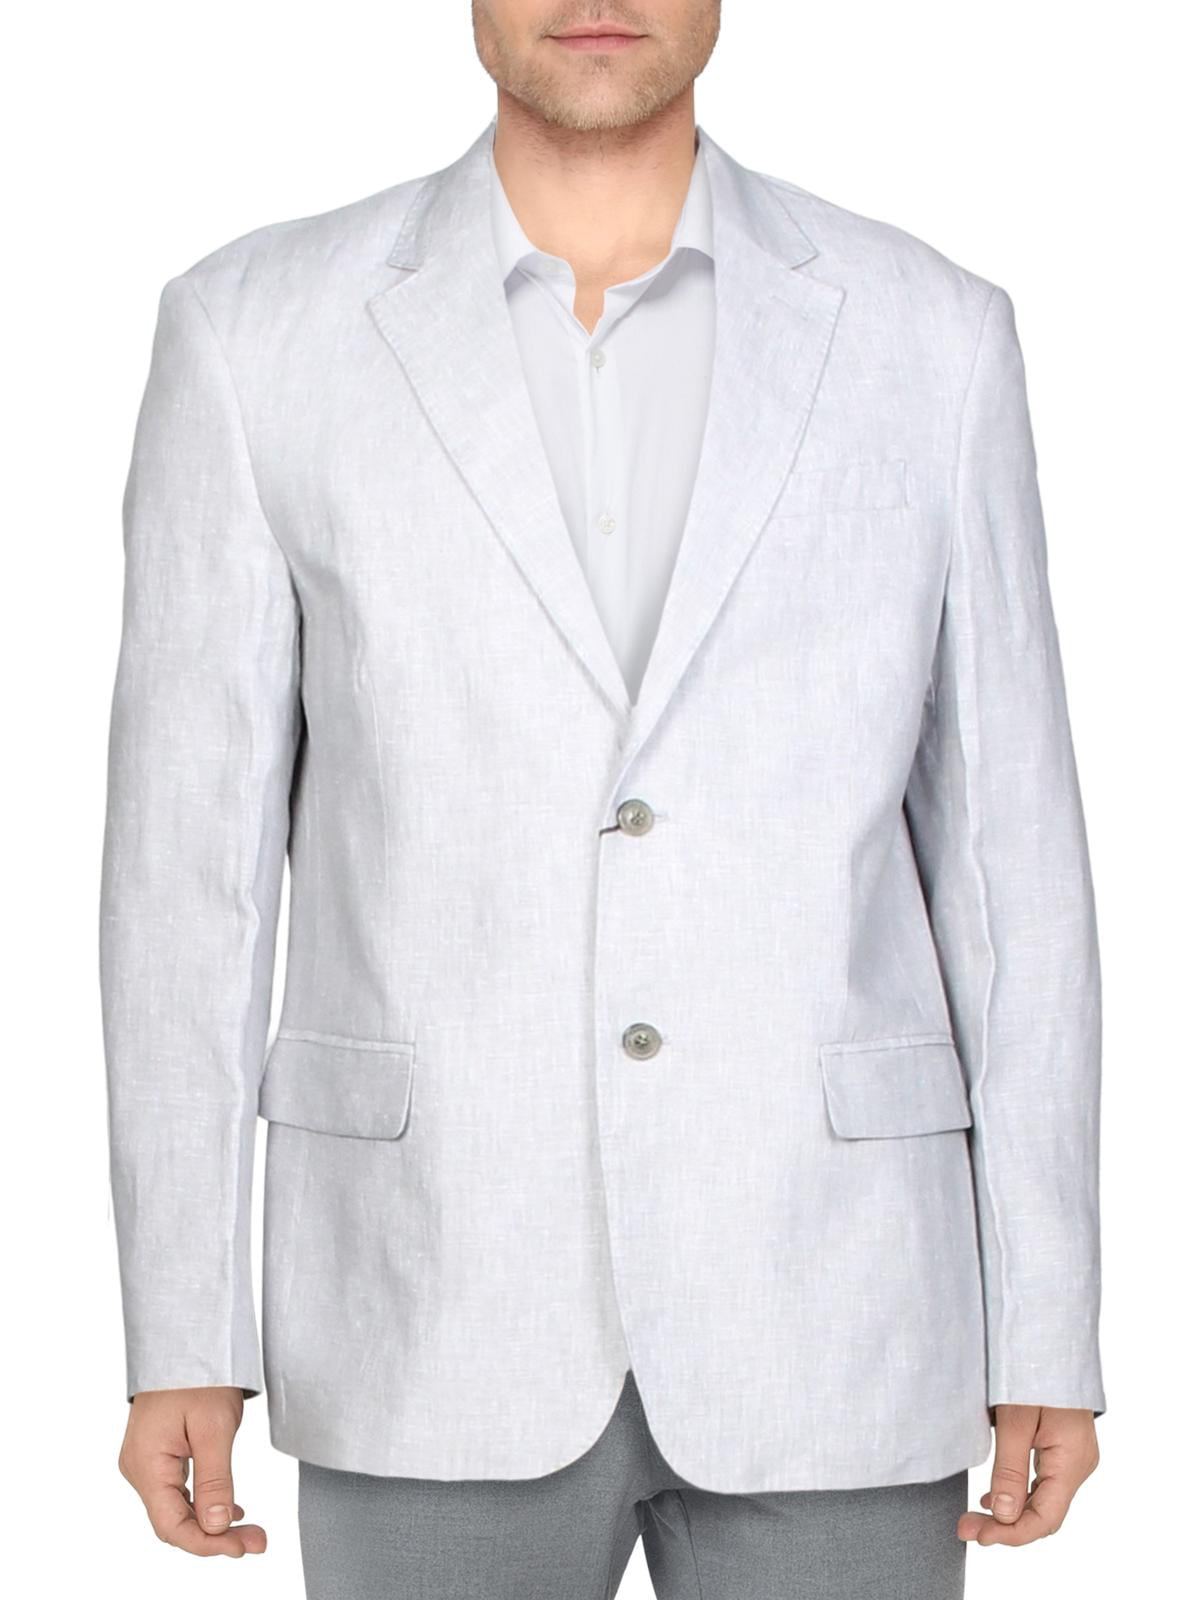 Tasso Elba - Tasso Elba Mens Linen Suit Separate Sportcoat - Walmart ...